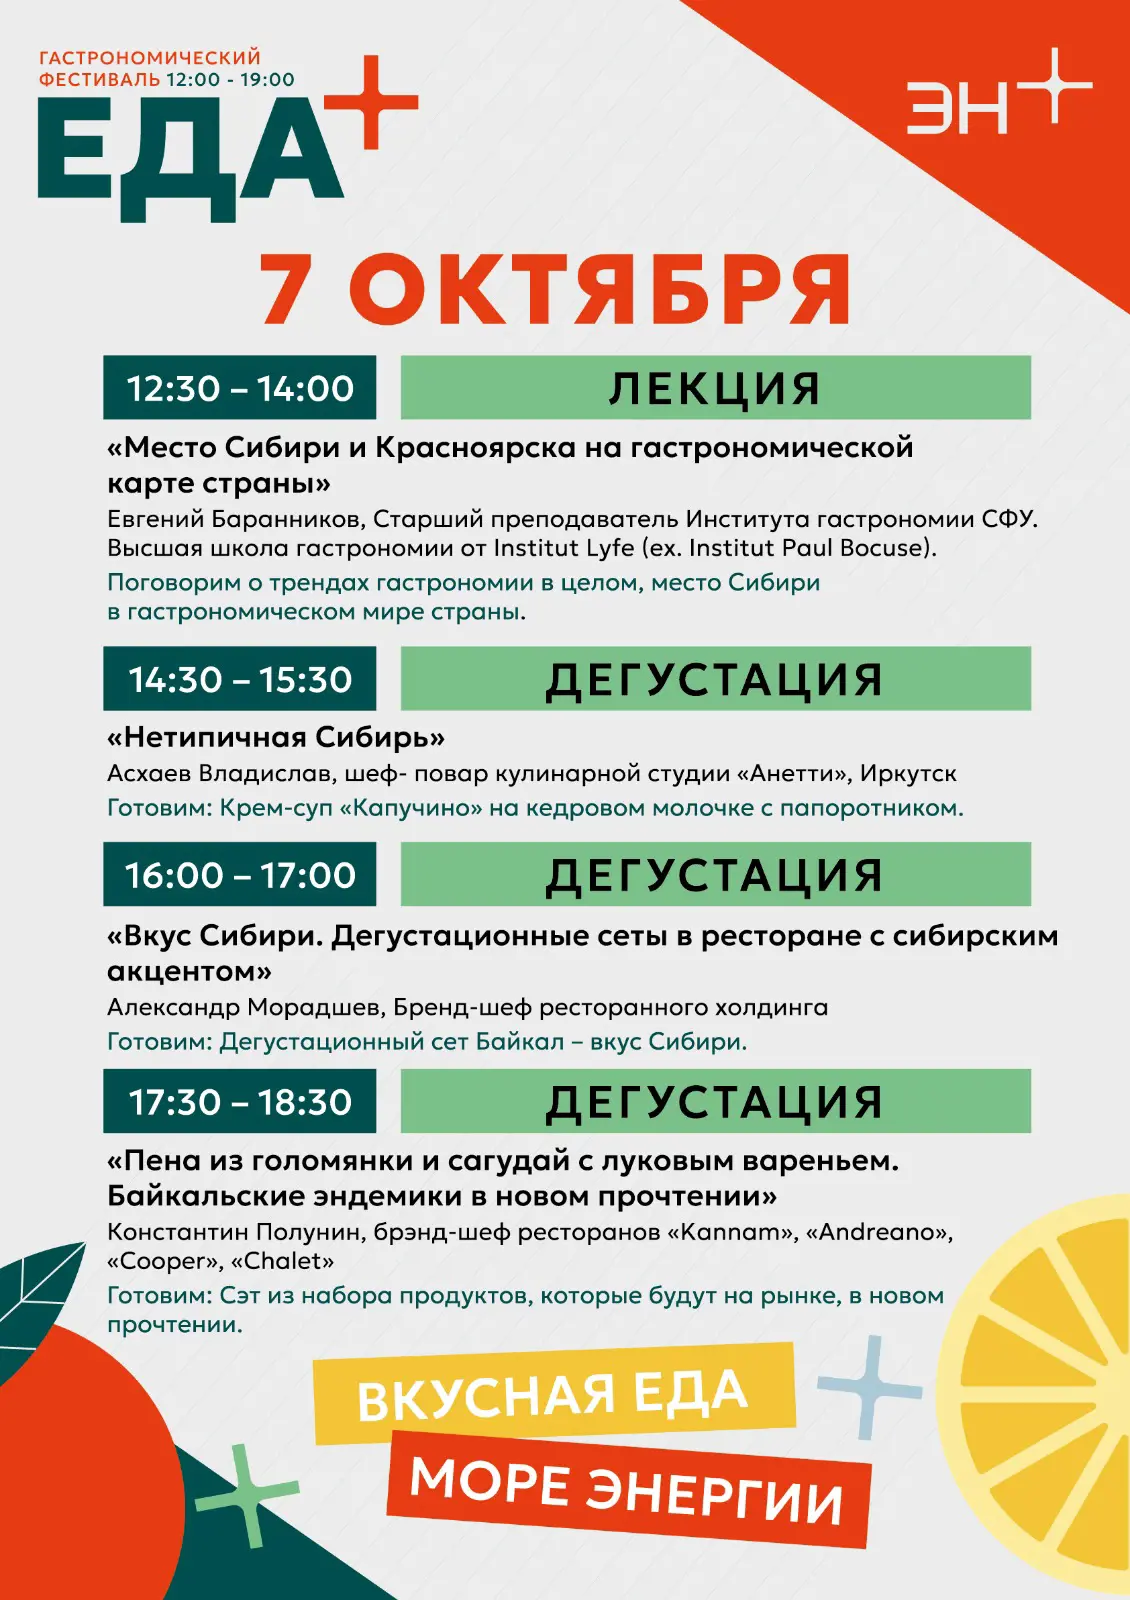 «Место Сибири на гастрономической карте страны»: фестиваль «Еда+» приглашает зарегистрироваться на лекции известных шеф-поваров